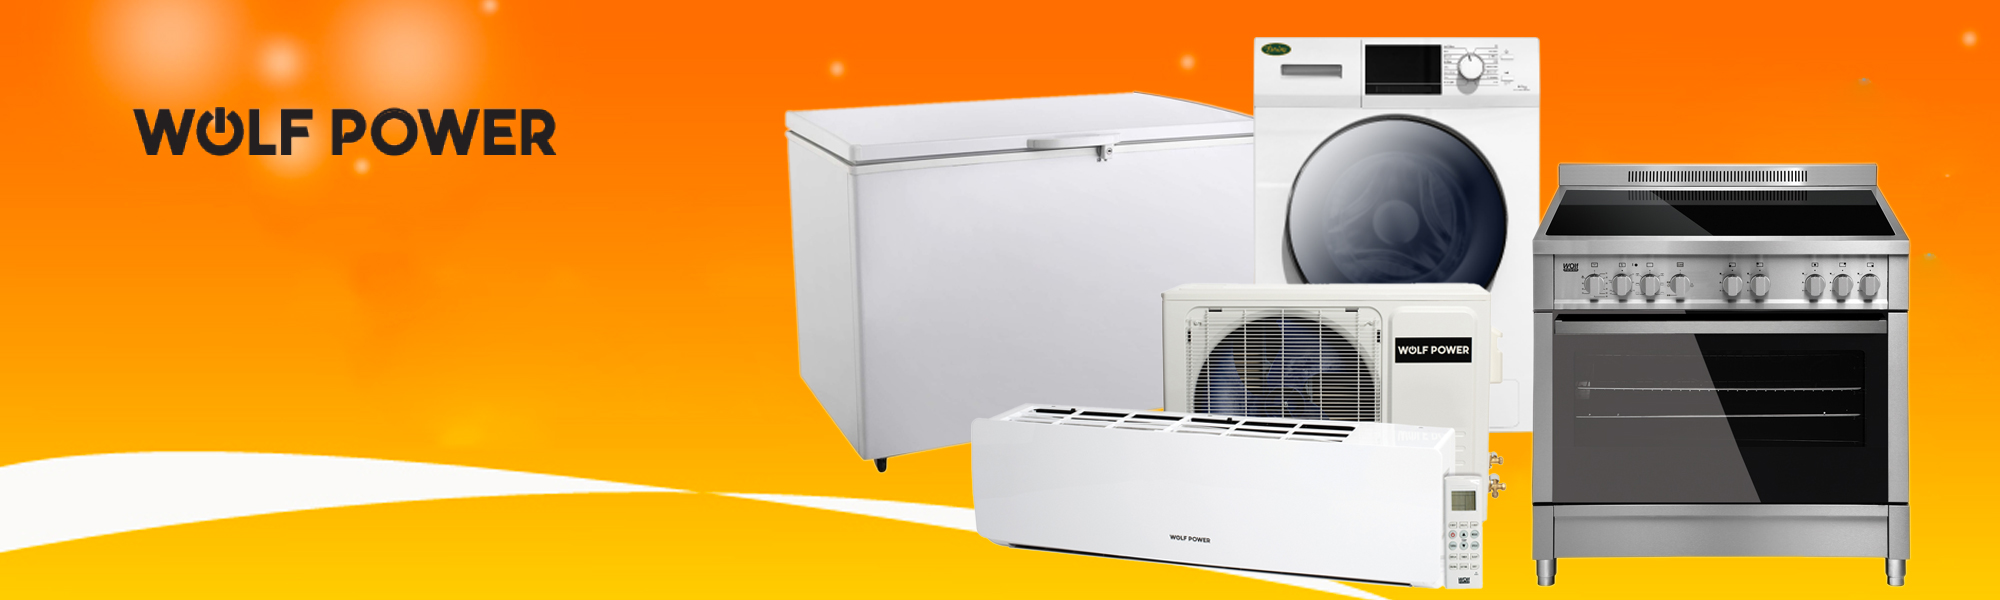 Washing Machine Repair, Freezer Repair, Cooker Repair, Air Conditioner Repair